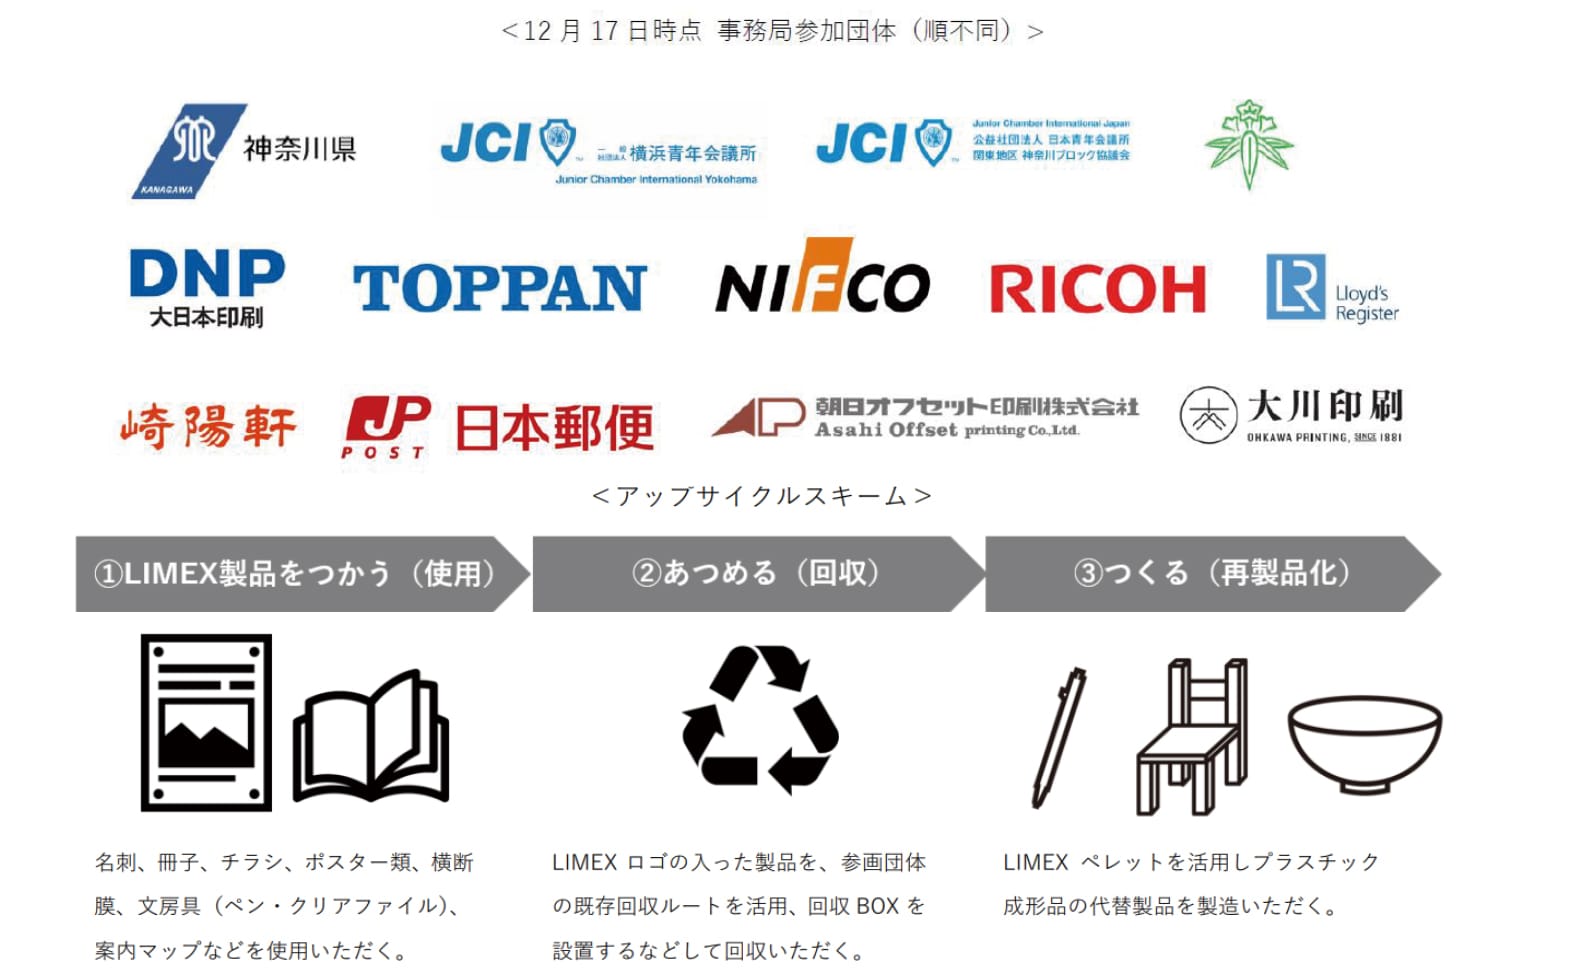 神奈川県とLIMEXのアップサイクルを通じた循環型のまちづくりを推進